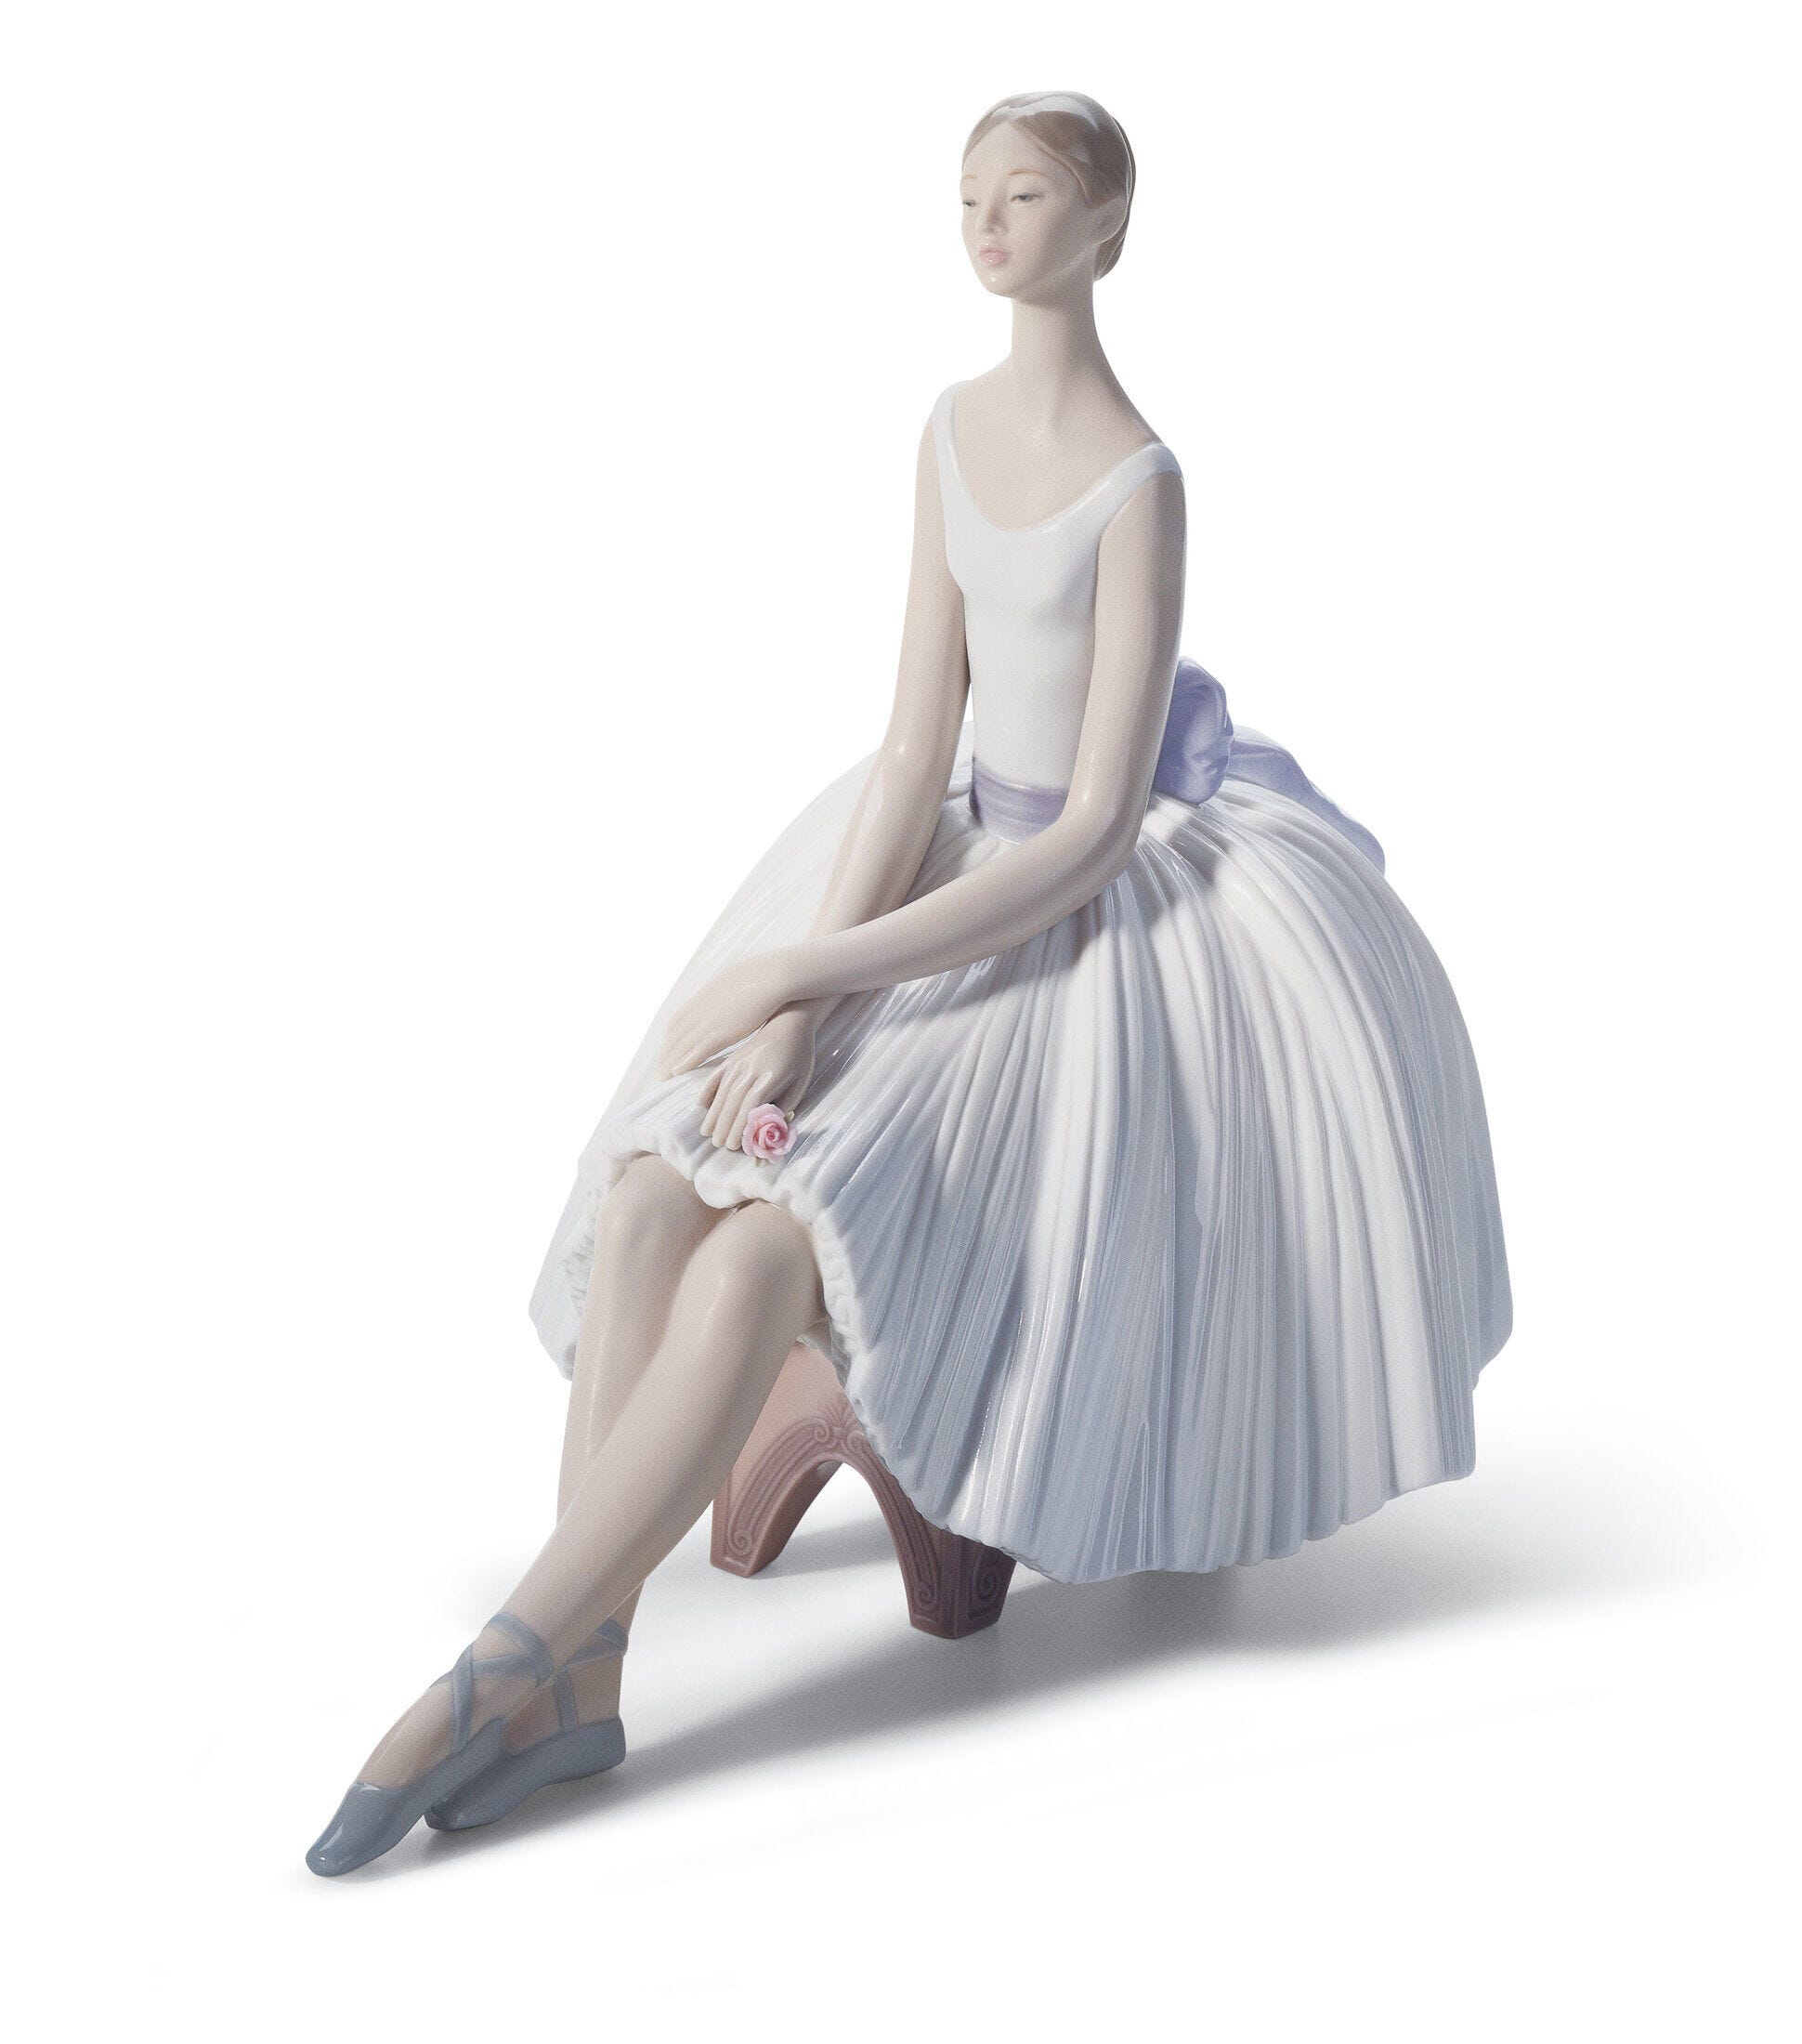 Refinement Ballet Woman Figurine - Lladro-USA